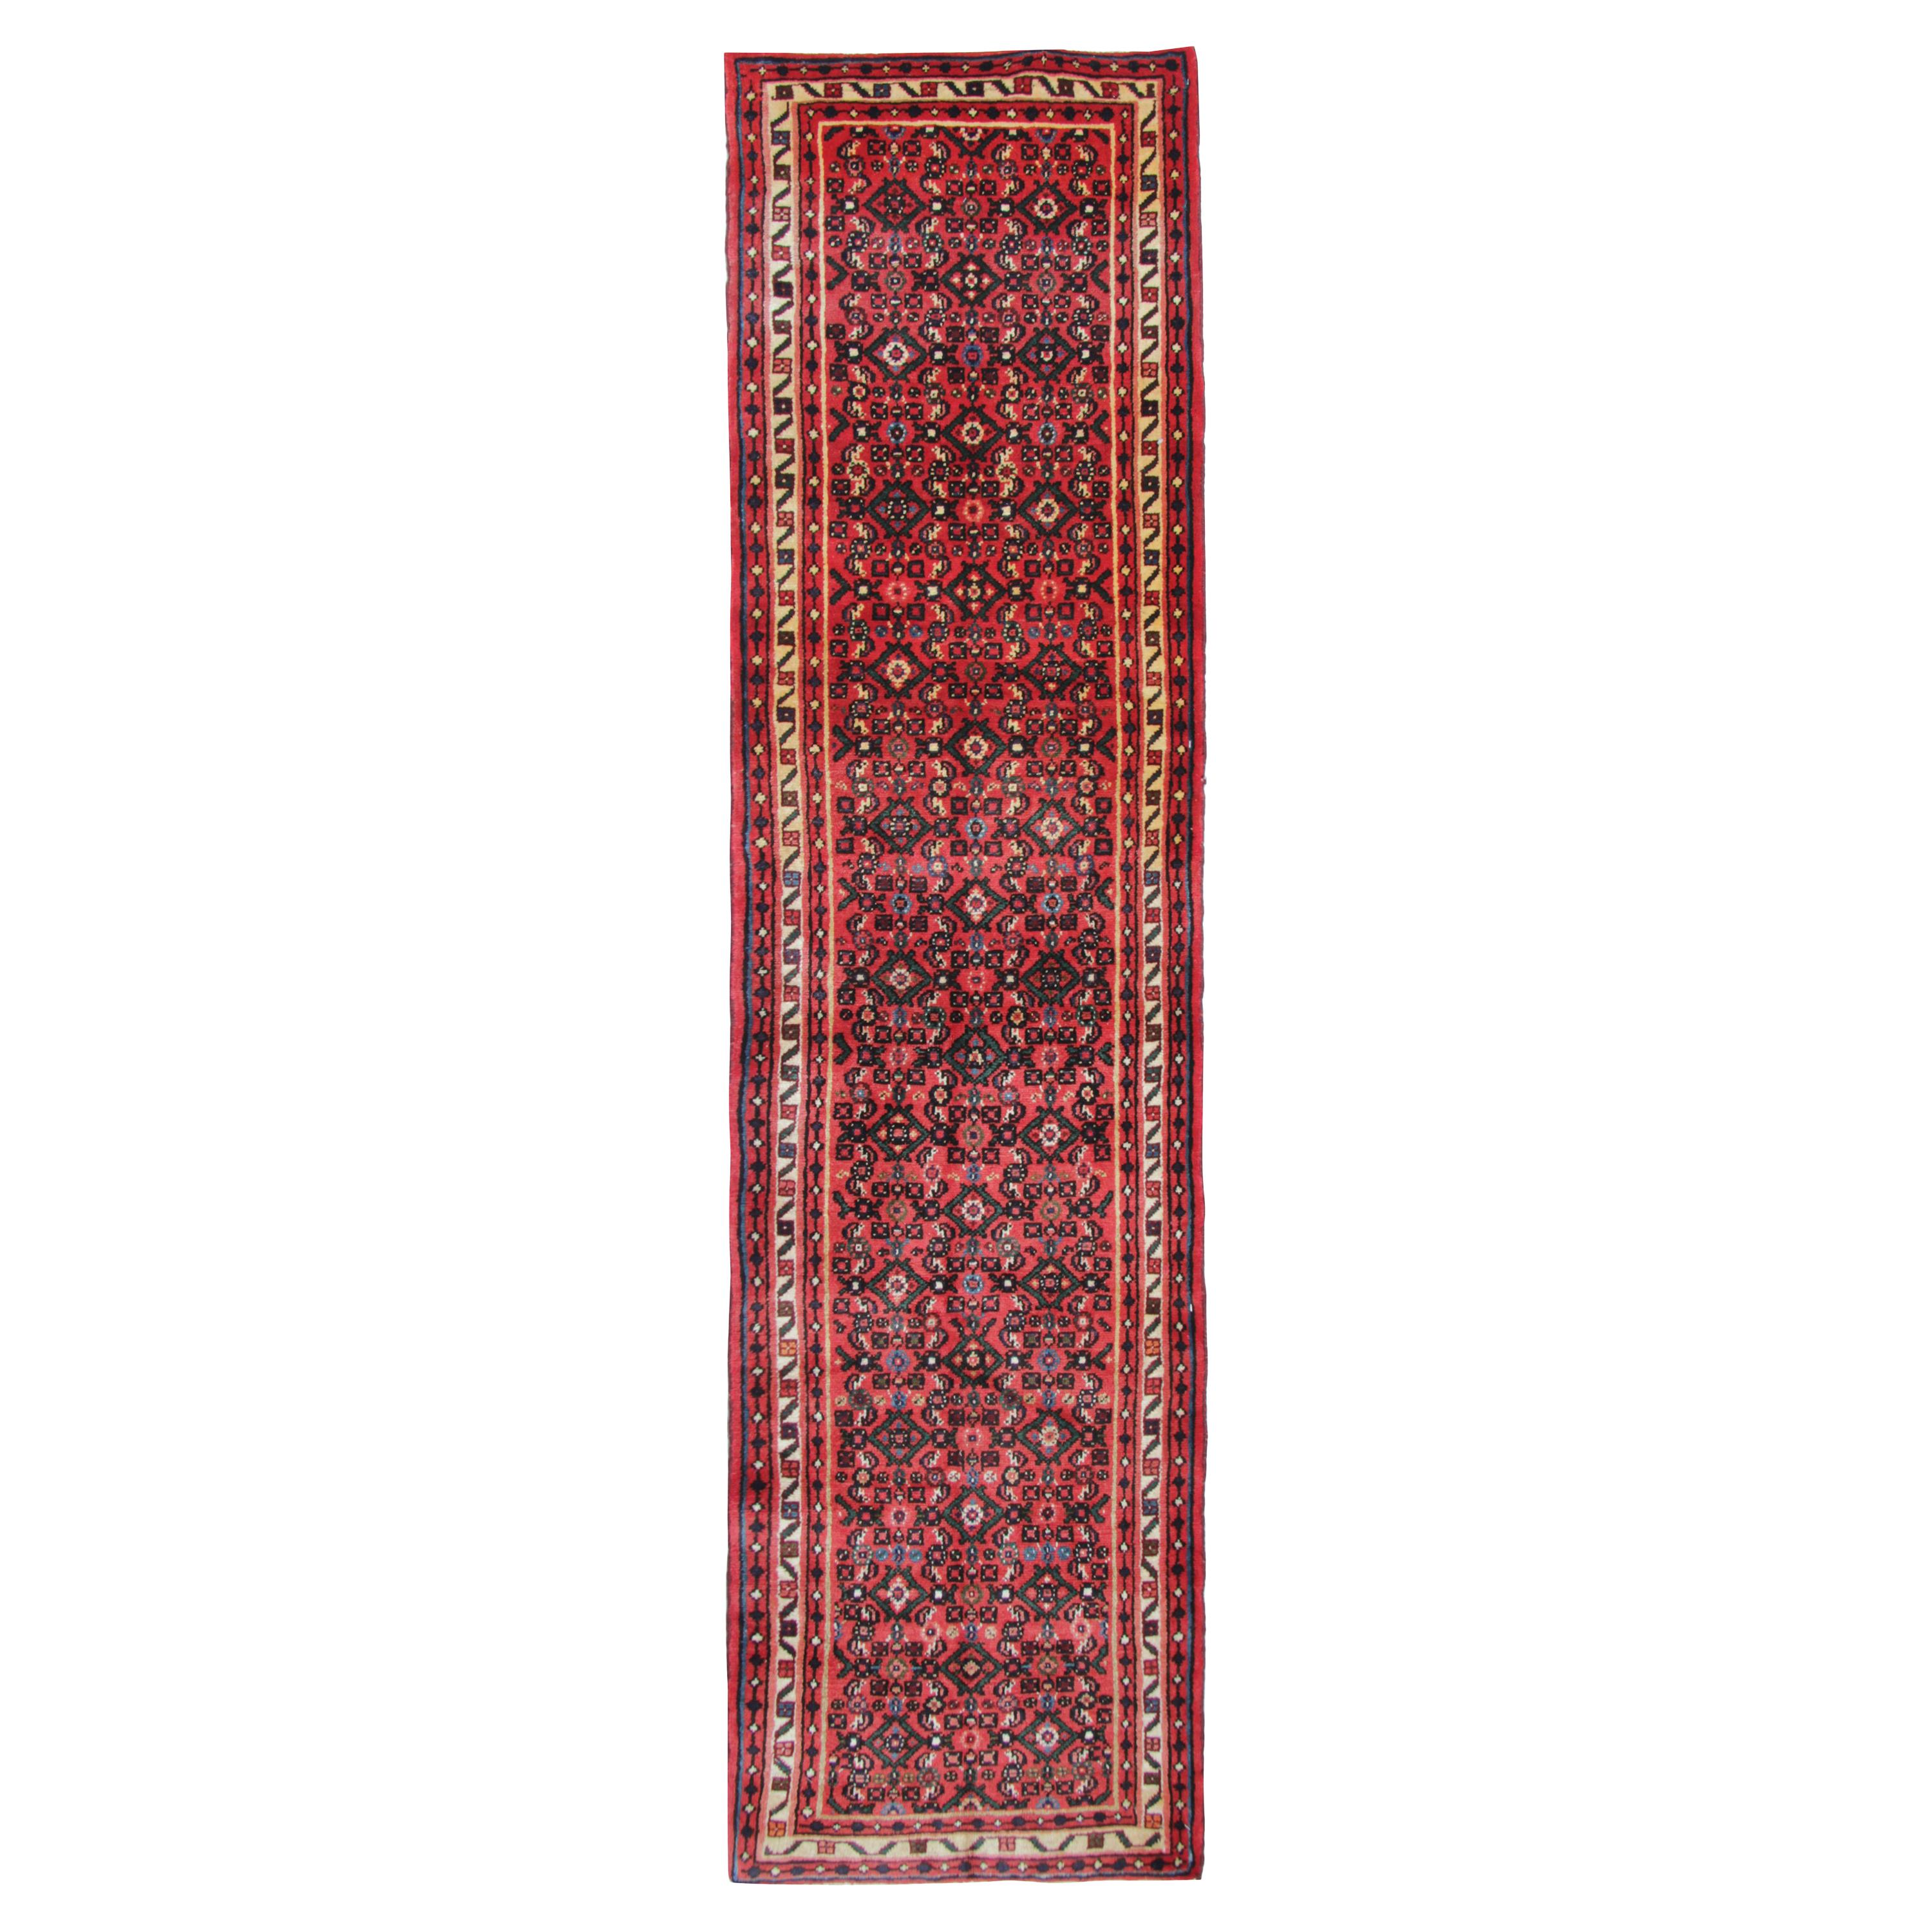 Handgefertigter Vintage-Läufer, Teppich aus orientalischer roter Wolle, Paar Läufer